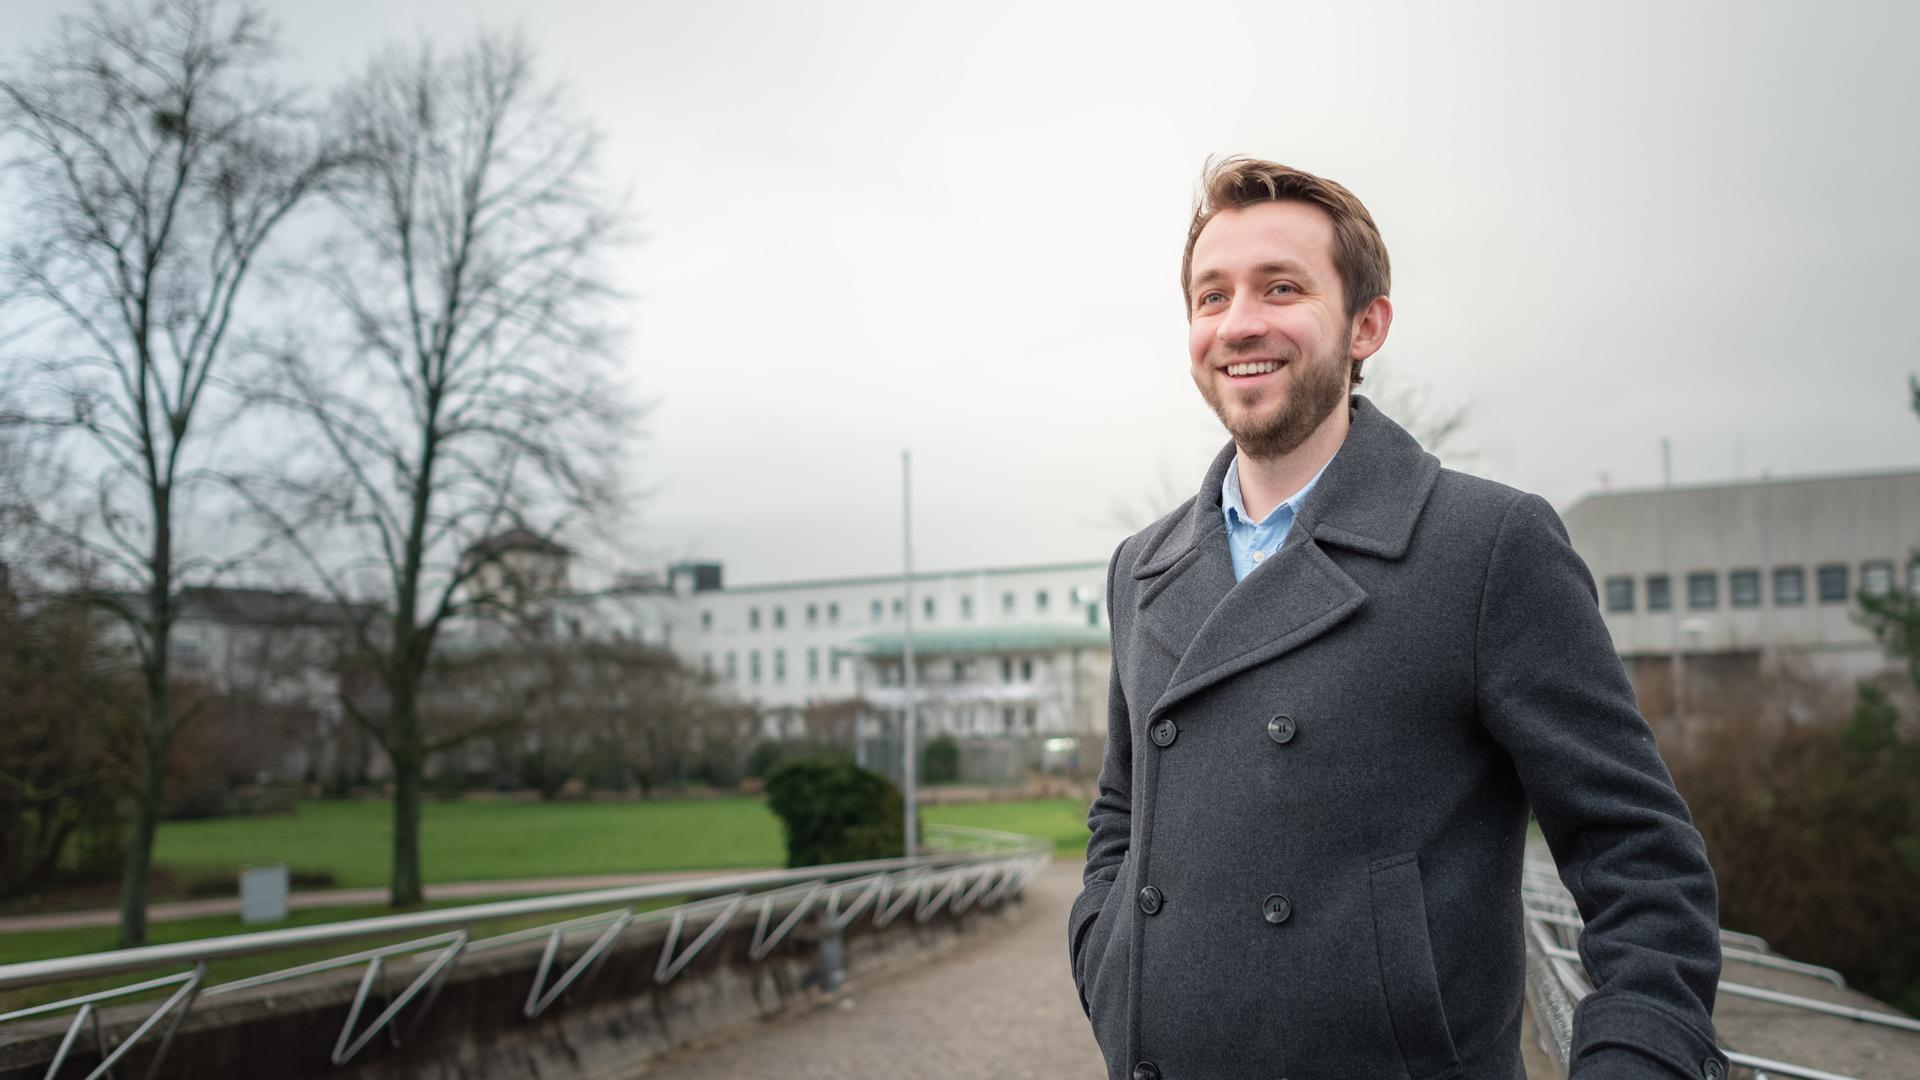 Sein Herzensthema ist die Bildung: Der Gaggenauer Patrick Wilczek will sich für Chancengleichheit einsetzen. Er tritt für die FDP bei der baden-württembergischen Landtagswahl im März 2021 an.